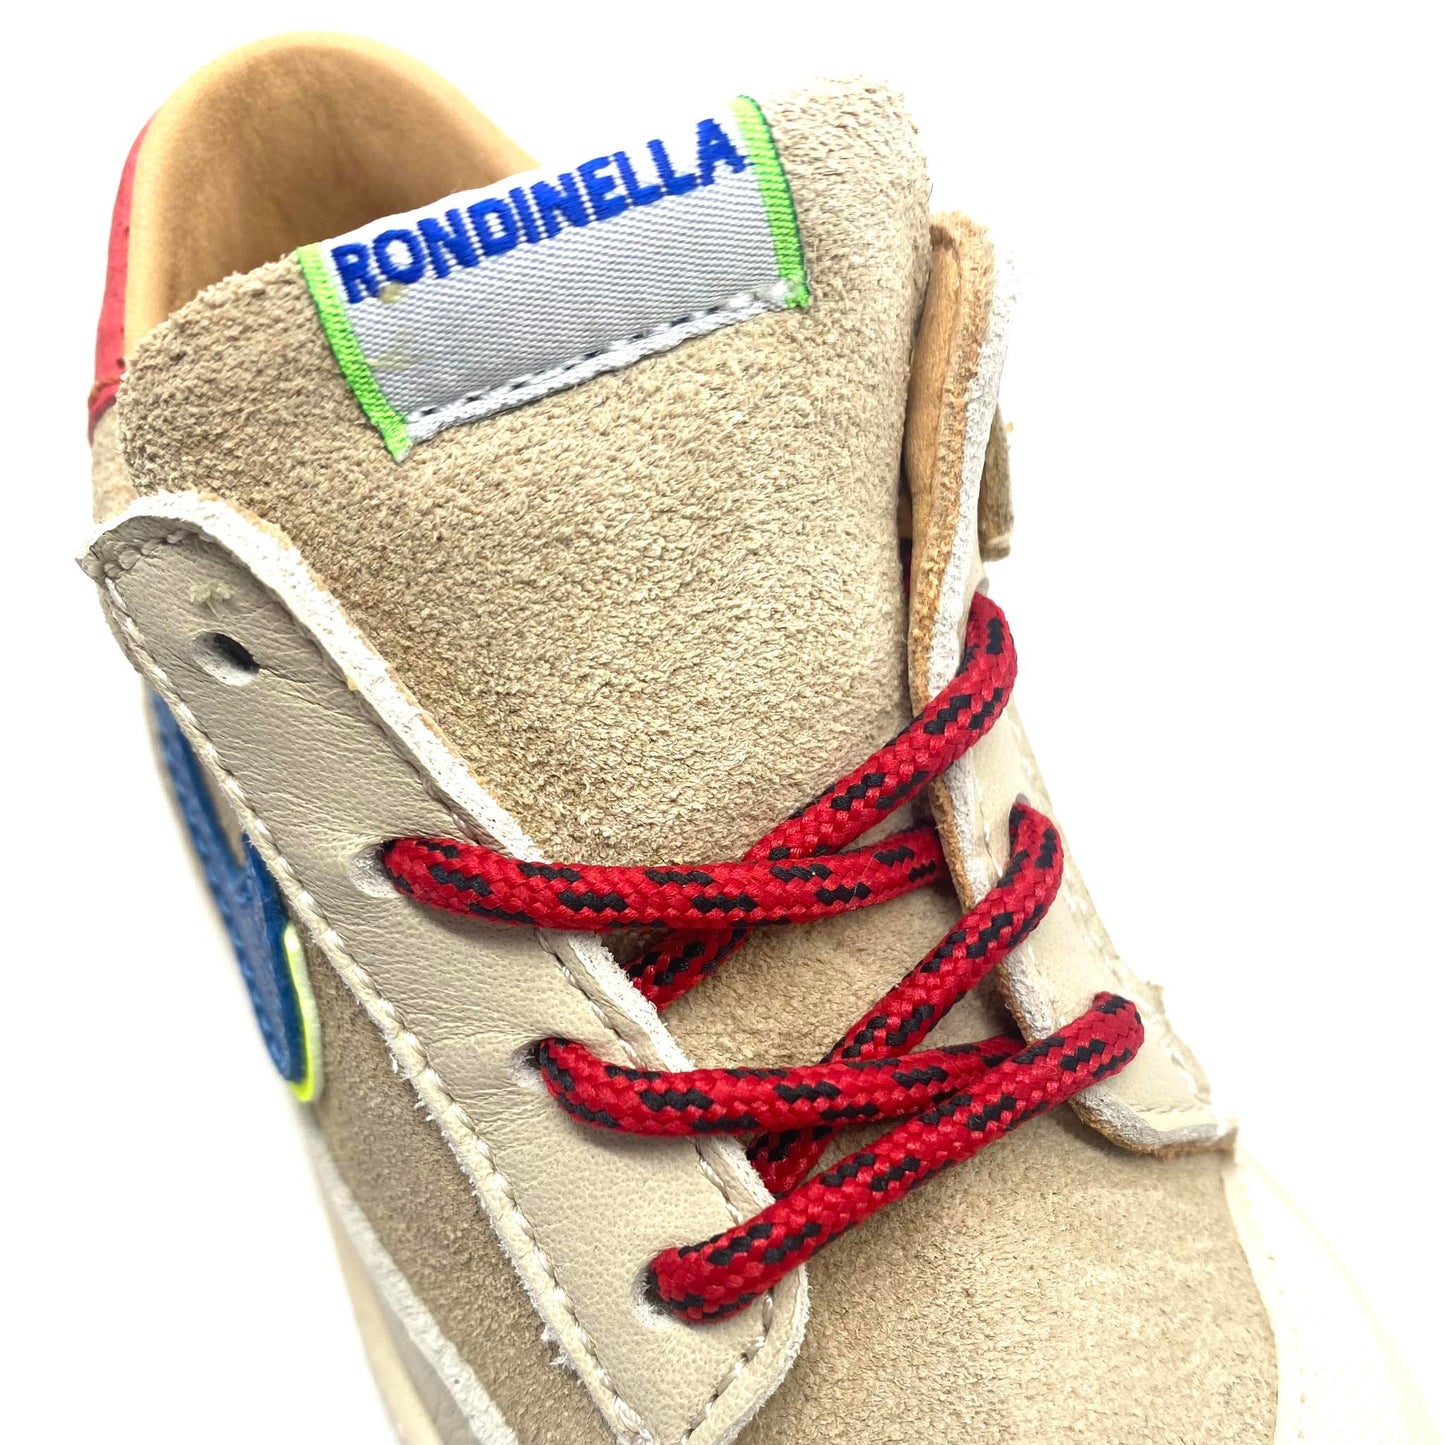 Rondinella sneakertje beige met blauw en rode accenten.